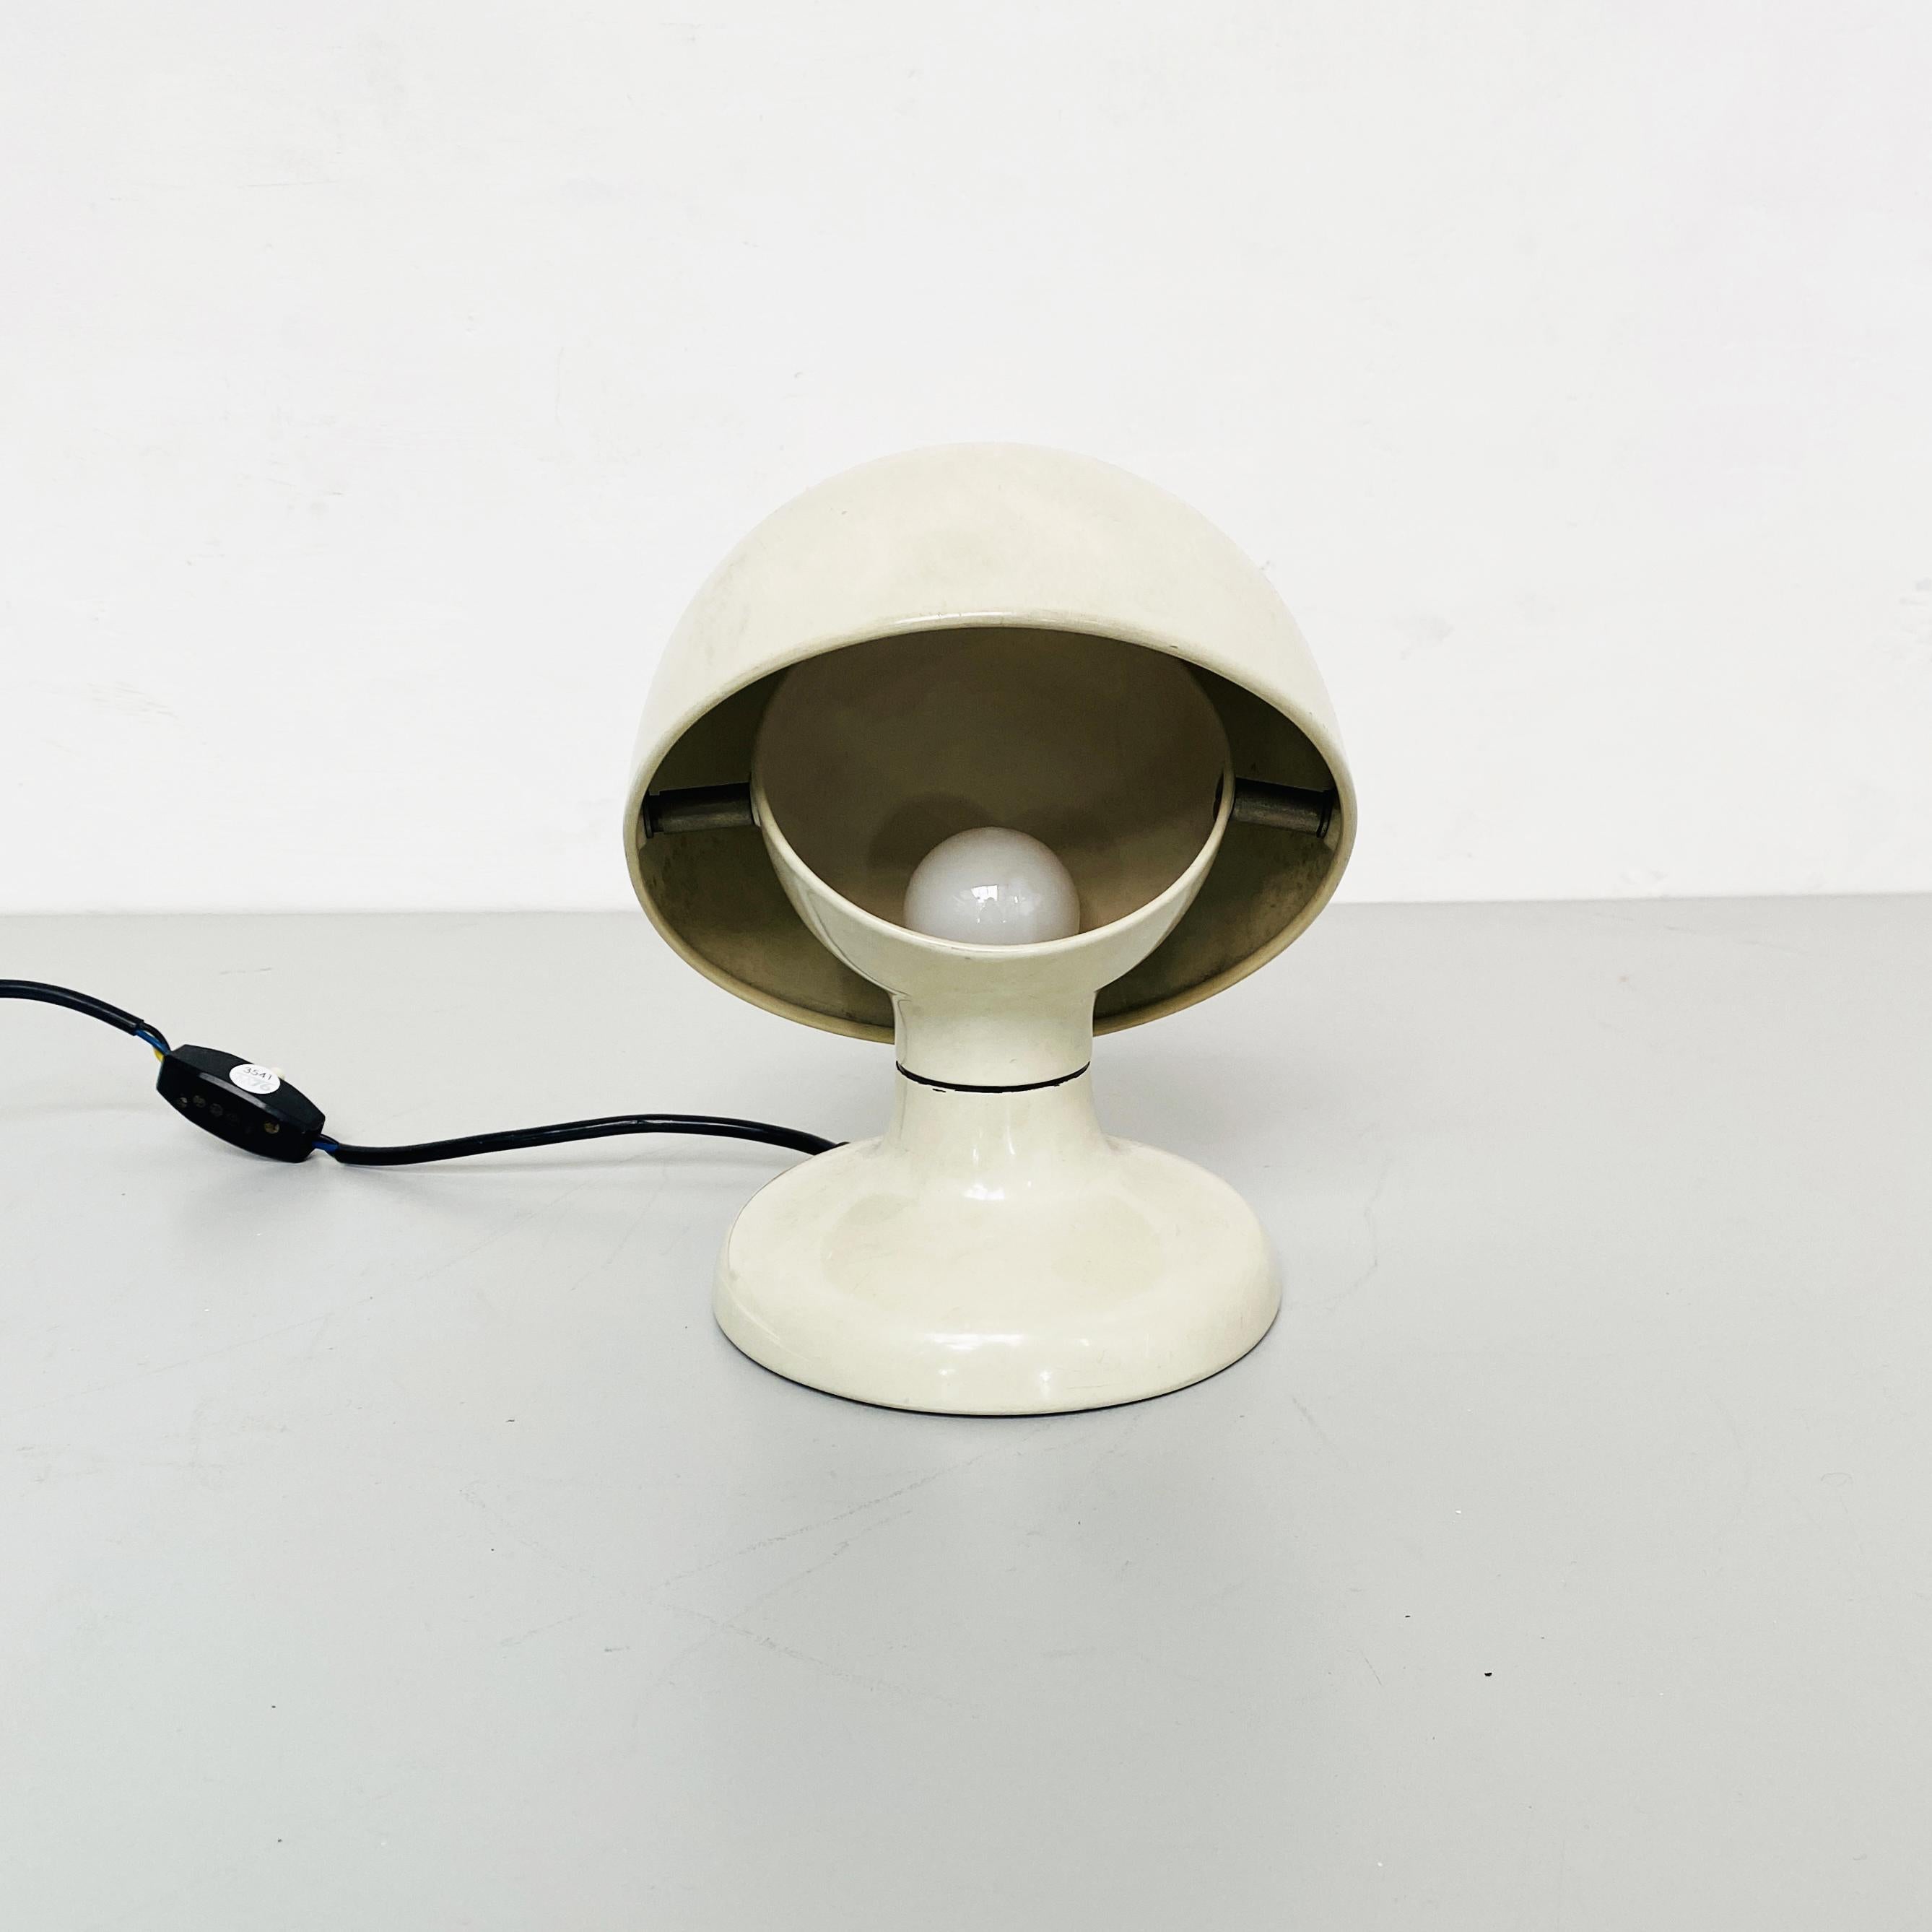 Lampe de table Jucker en métal blanc, Italie, milieu du siècle, Tobia Scarpa pour Flos, 1963
Lampes de table réglables Jucker en métal blanc. 

Produit par Flos en 1963 sur un projet de Tobia Scarpa.
Tobia Scarpa est un important designer italien